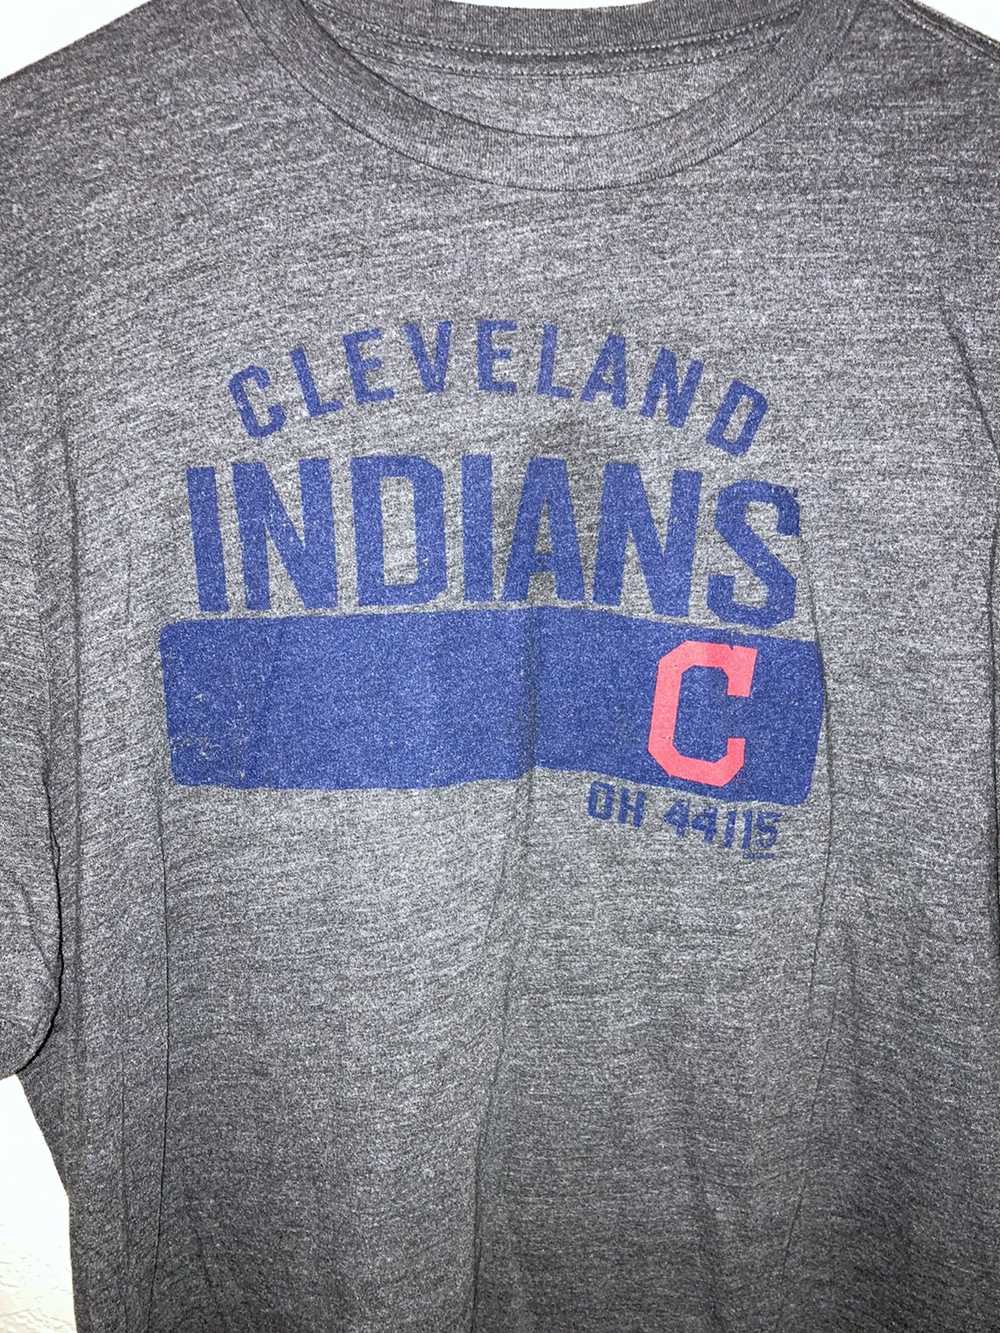 MLB Cleveland Indians Ohio Genuine Merchandise sz… - image 3